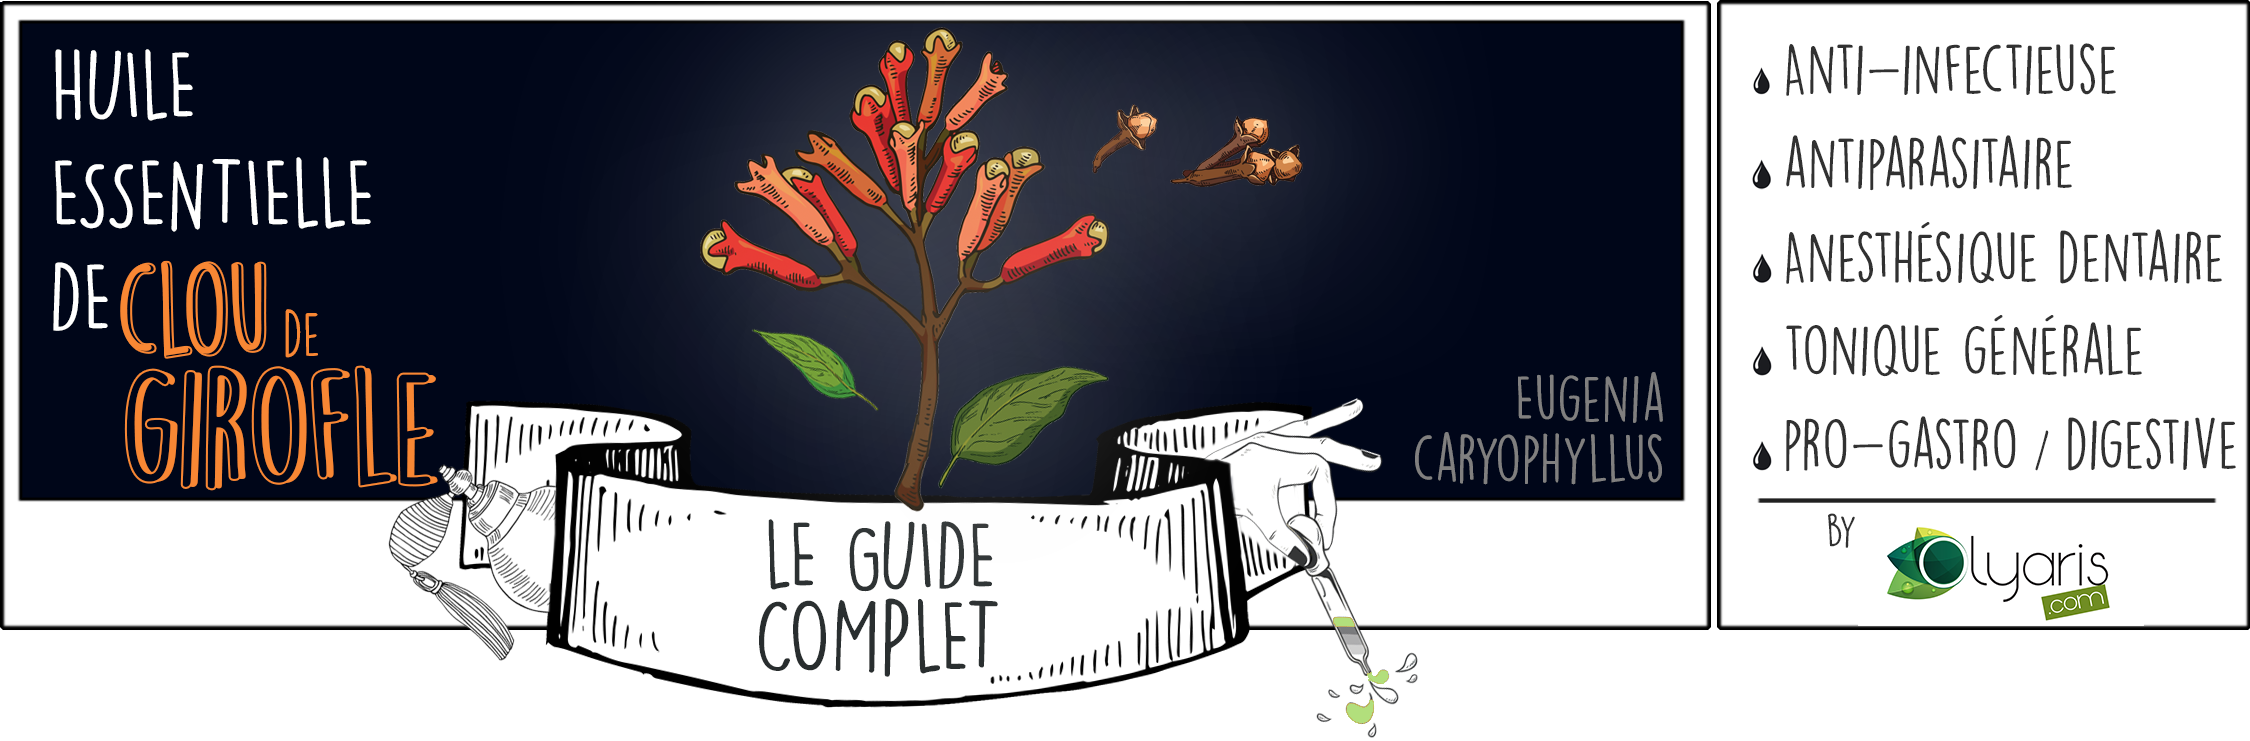 Huile Essentielle de Clou de Girofle: le Guide Complet par Olyaris